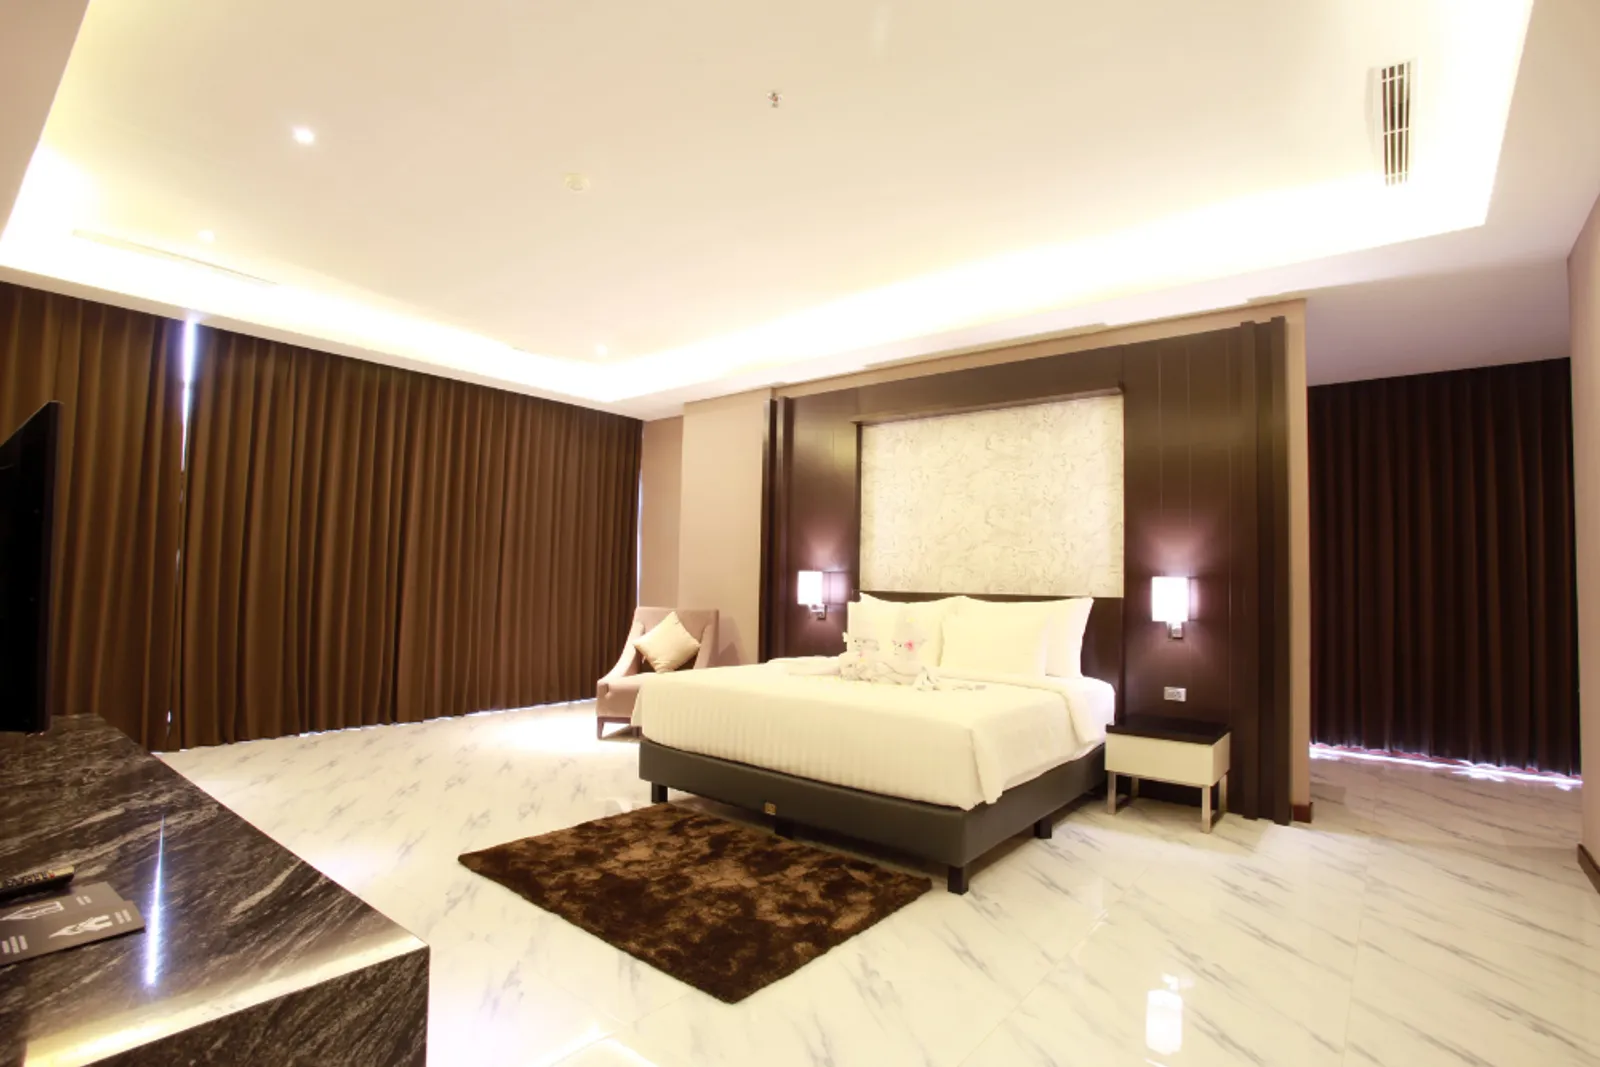 7 Rekomendasi Hotel di Purwokerto untuk Libur Lebaran